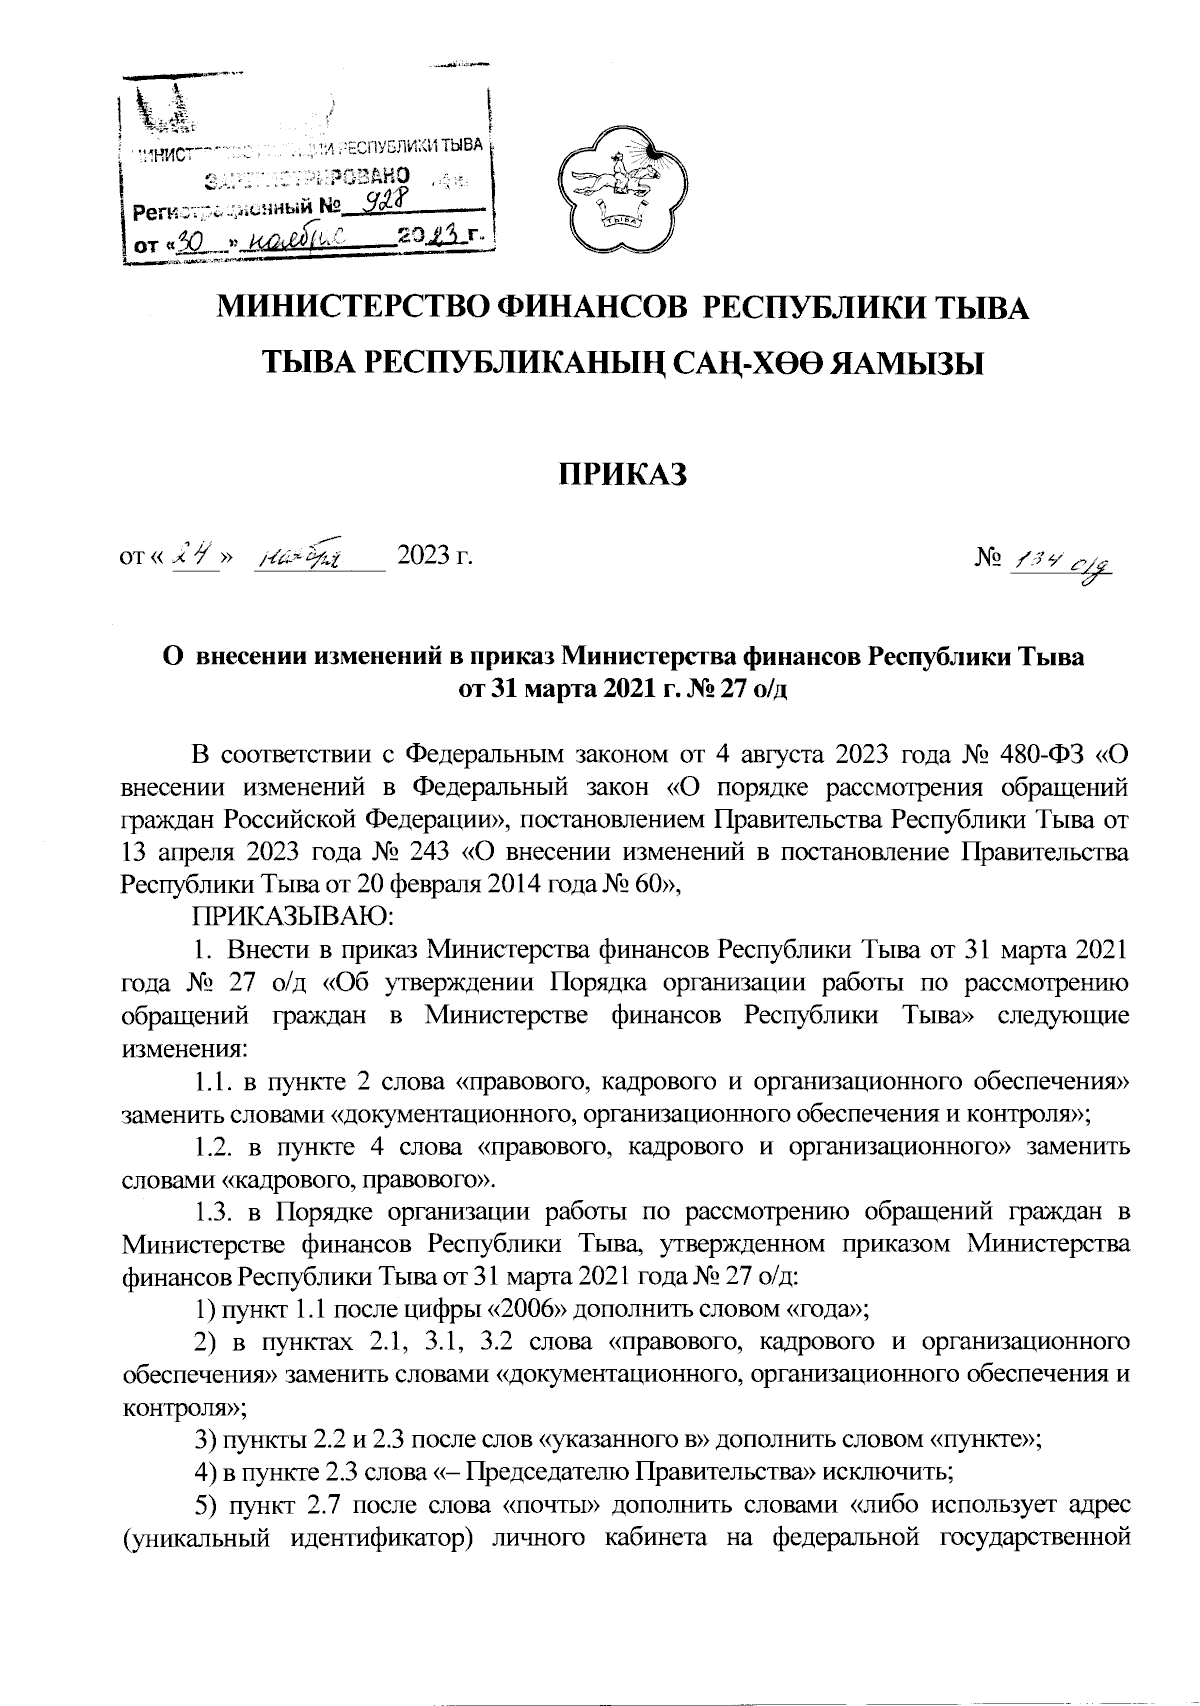 Приказ Министерства Финансов Республики Тыва От 24.11.2023 № 134 О.